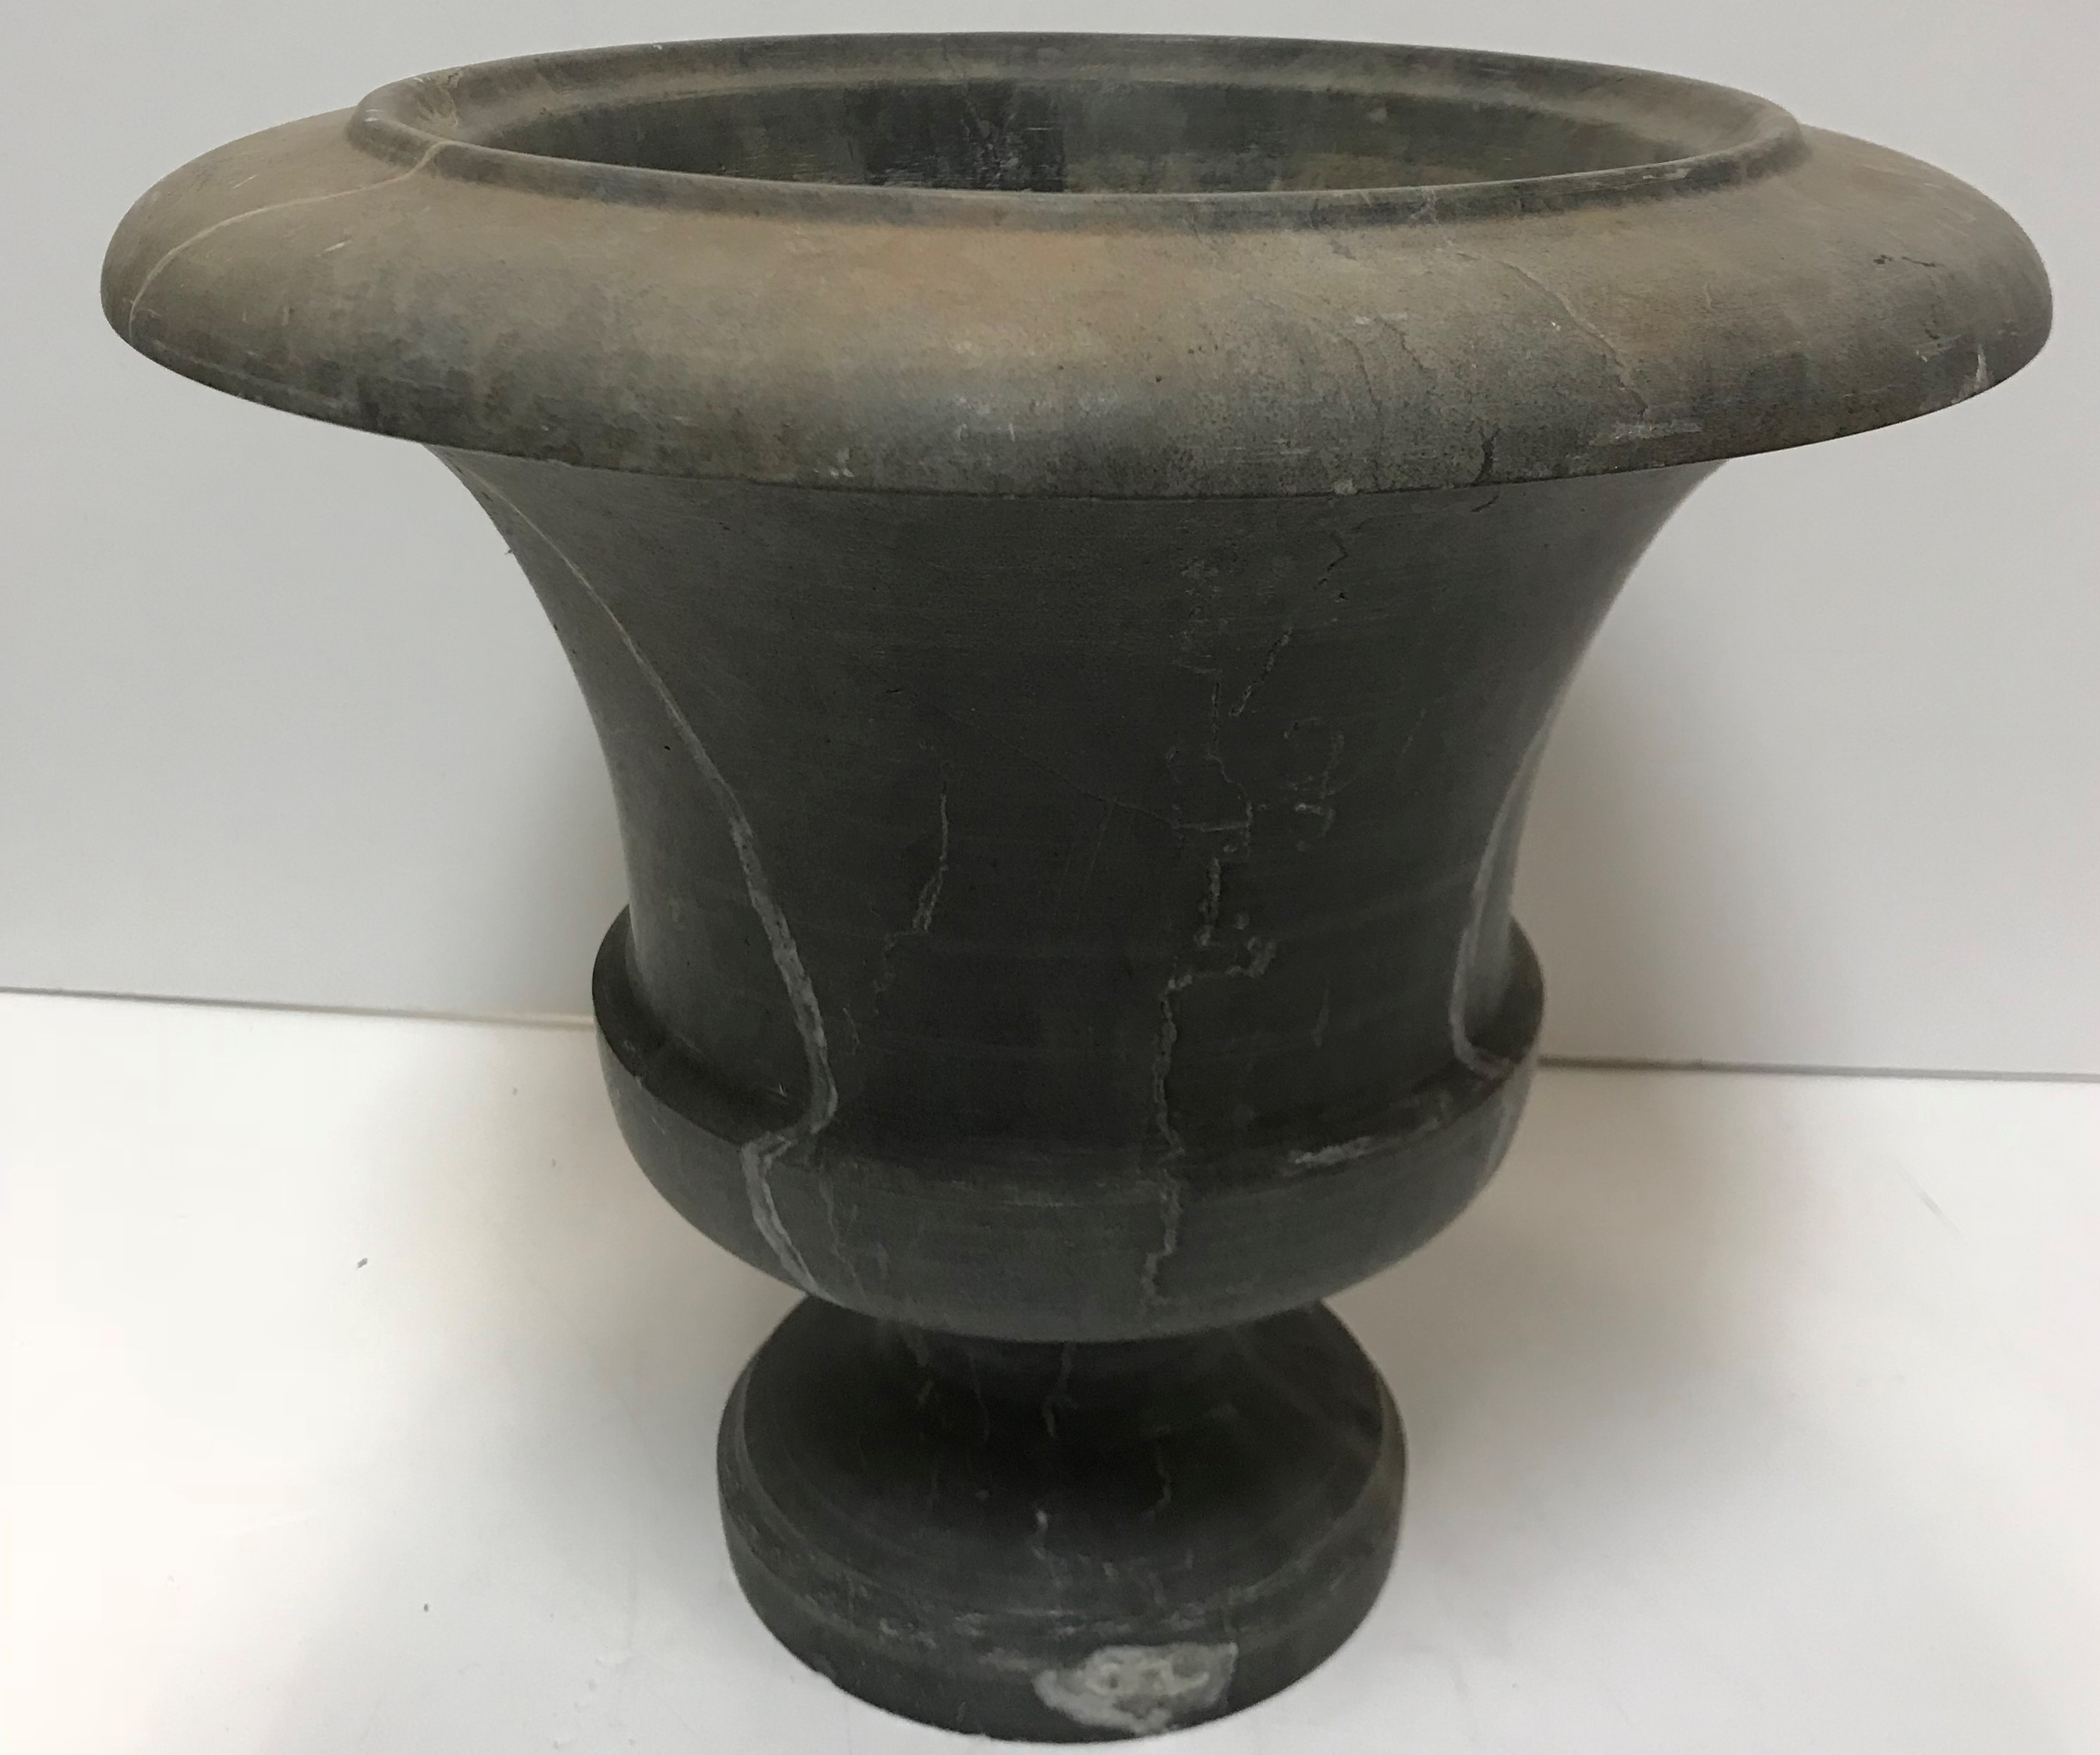 A grey veined dark grey marble urn with flared rim raised on a circular foot 36 cm diameter x 32 cm